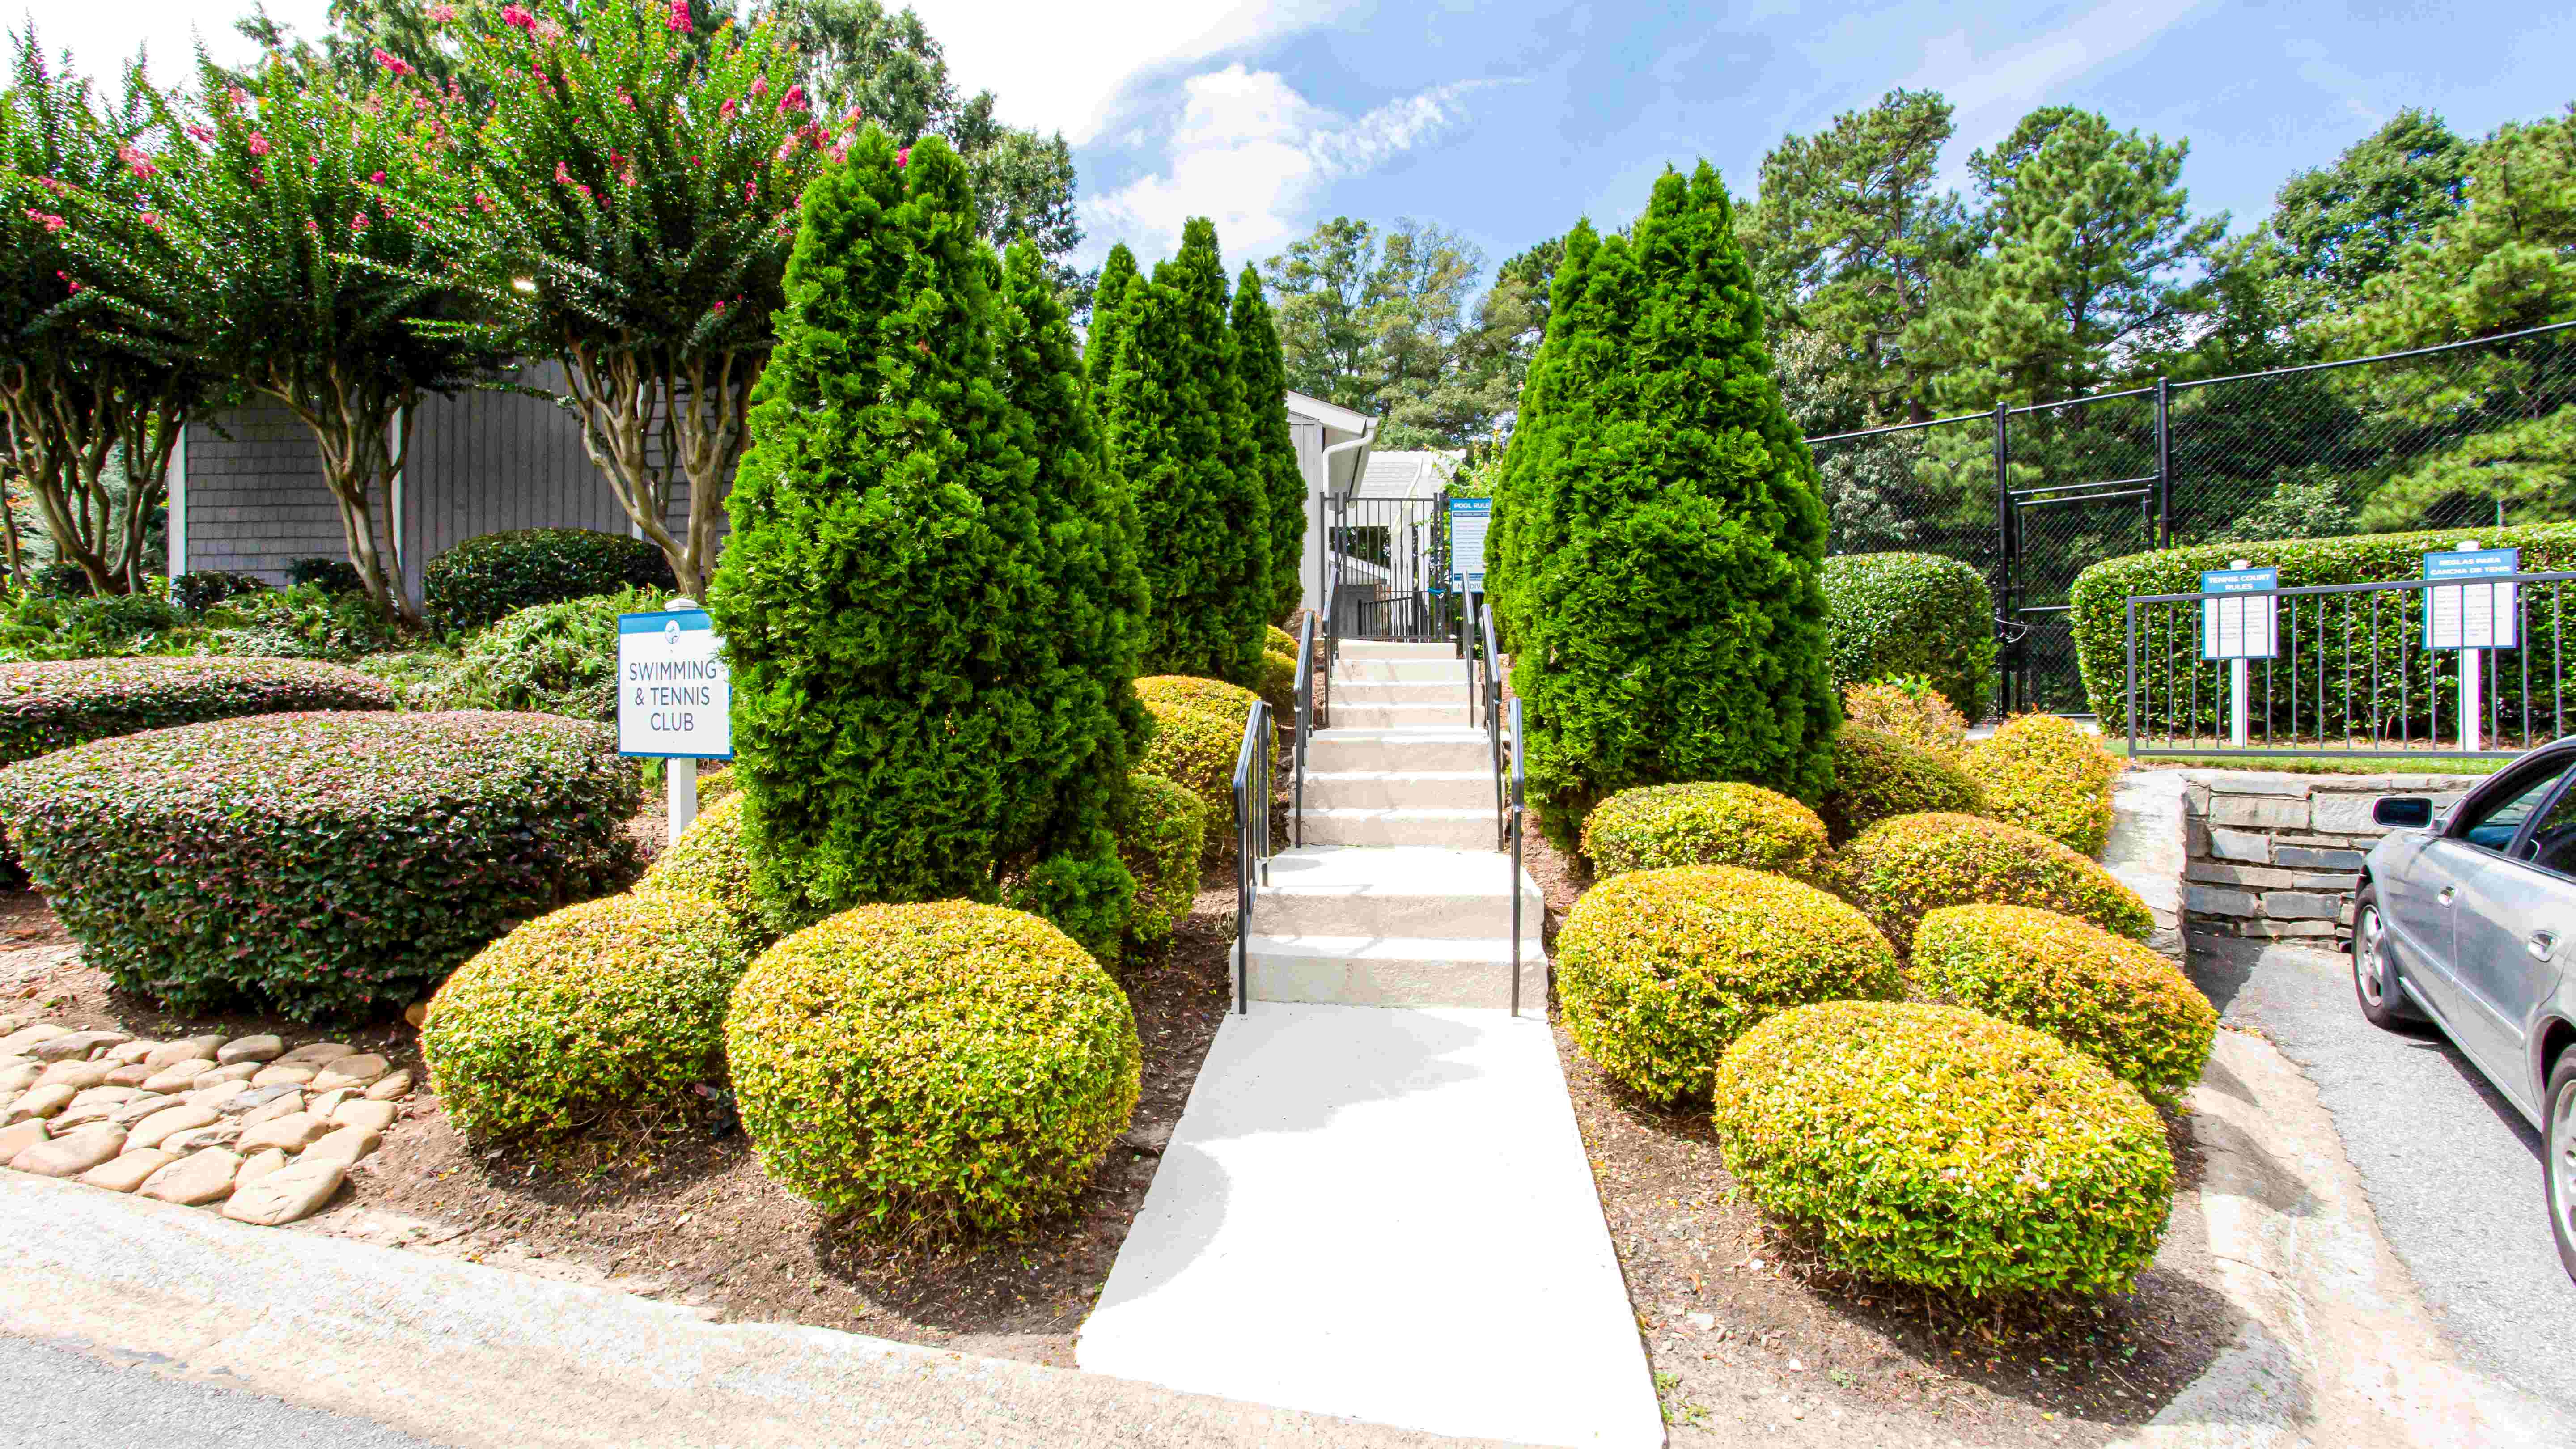 Midwood Estates Located in Doraville, GA exterior view